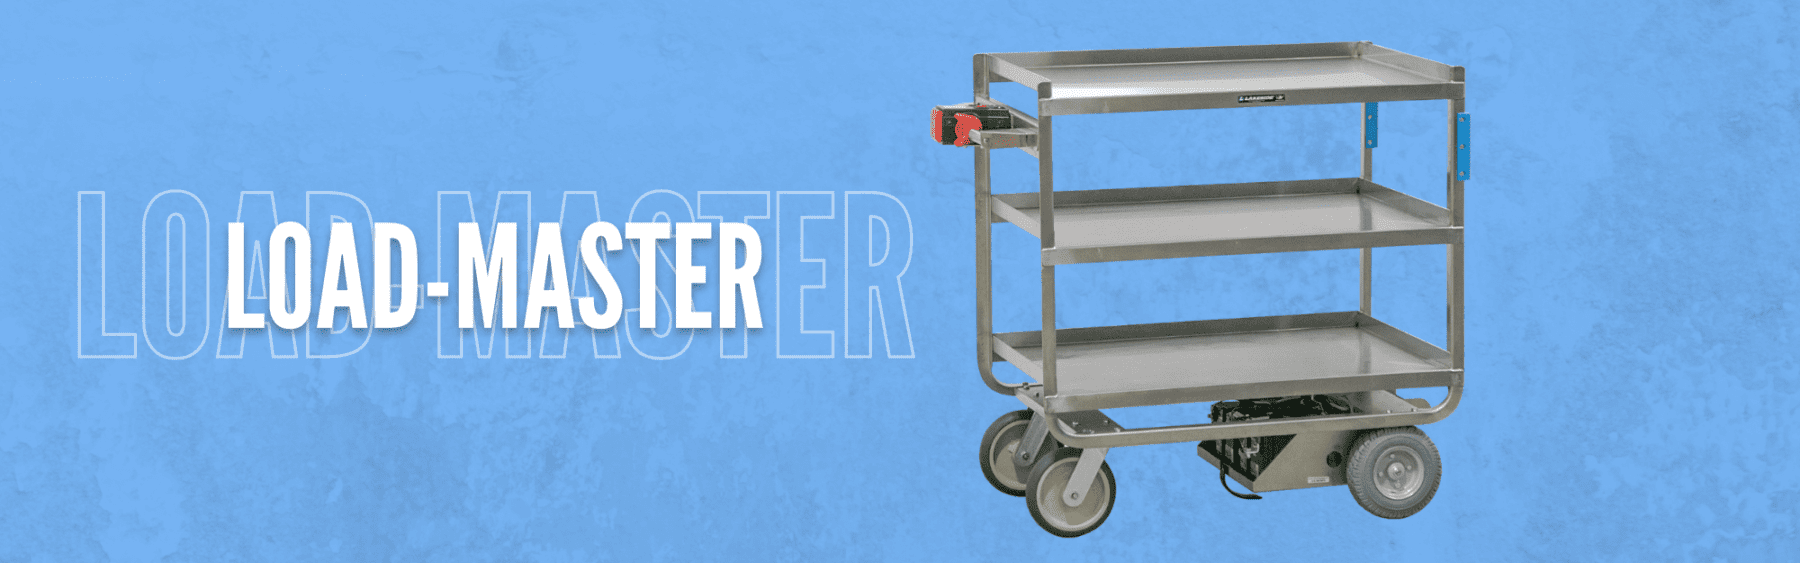 Load-Master motorized utility cart